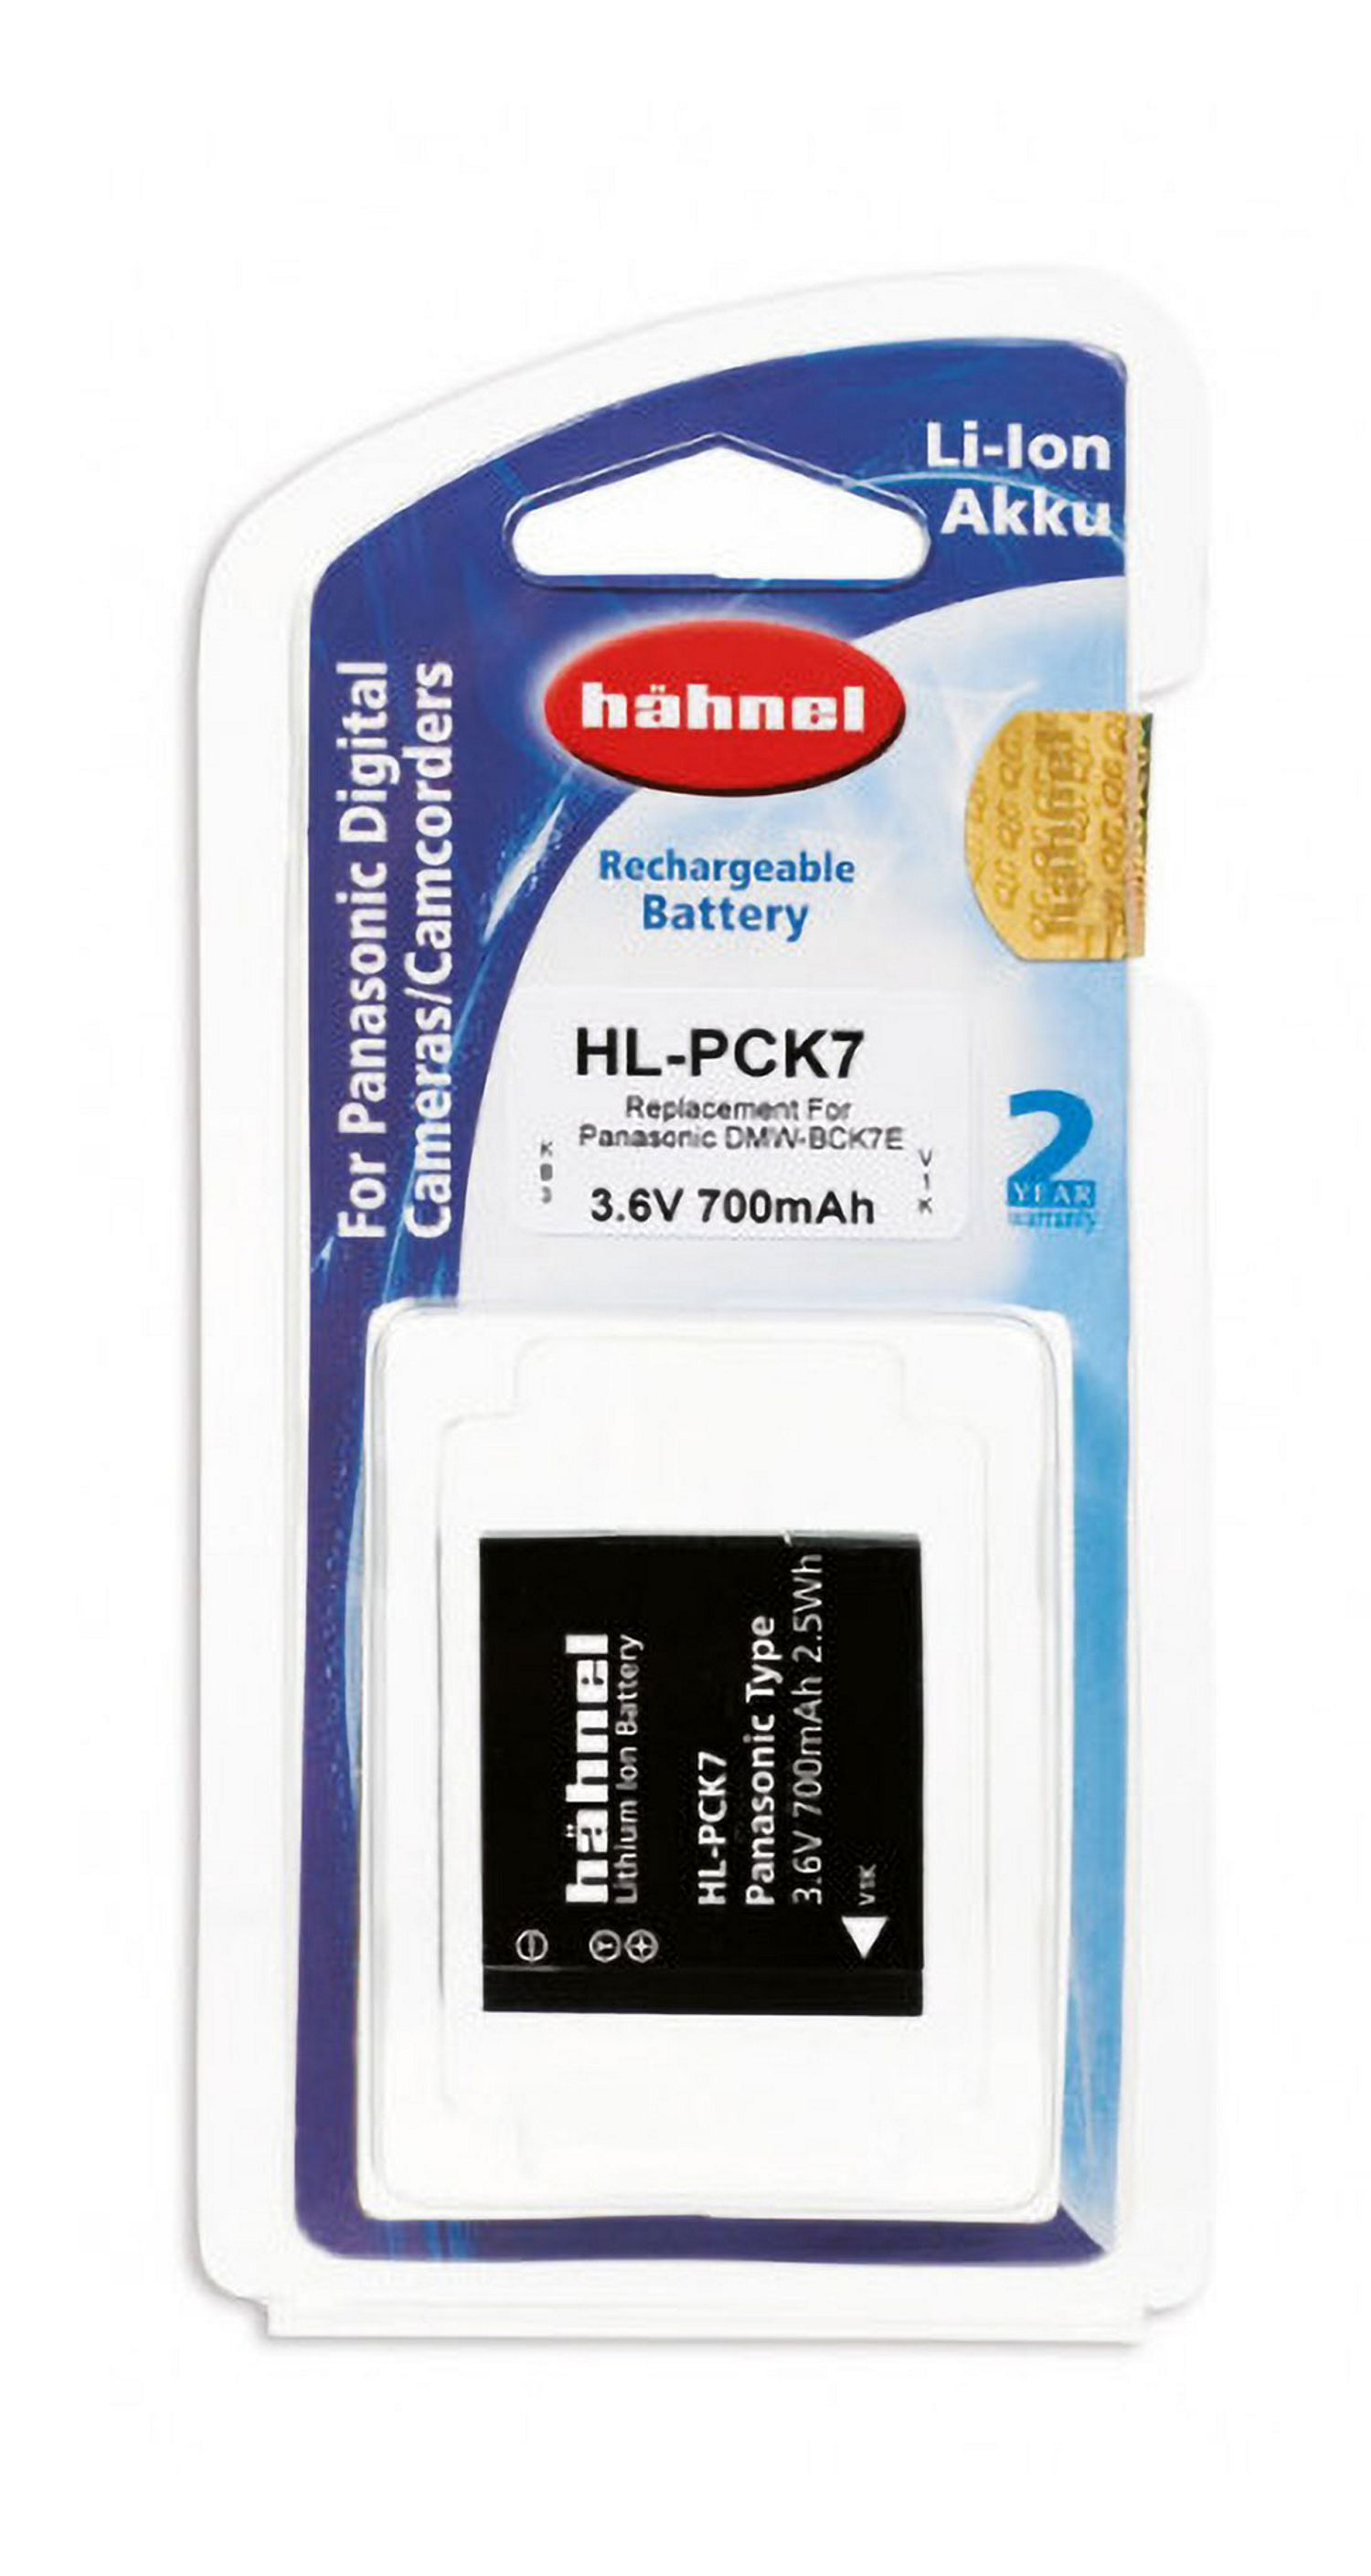 Panasonic Hähnel mAh Li-Ion kompatibel MOBILOTEC 700 3.7 Akku, DMW-BCK7E mit Volt, Li-Ion, Akku